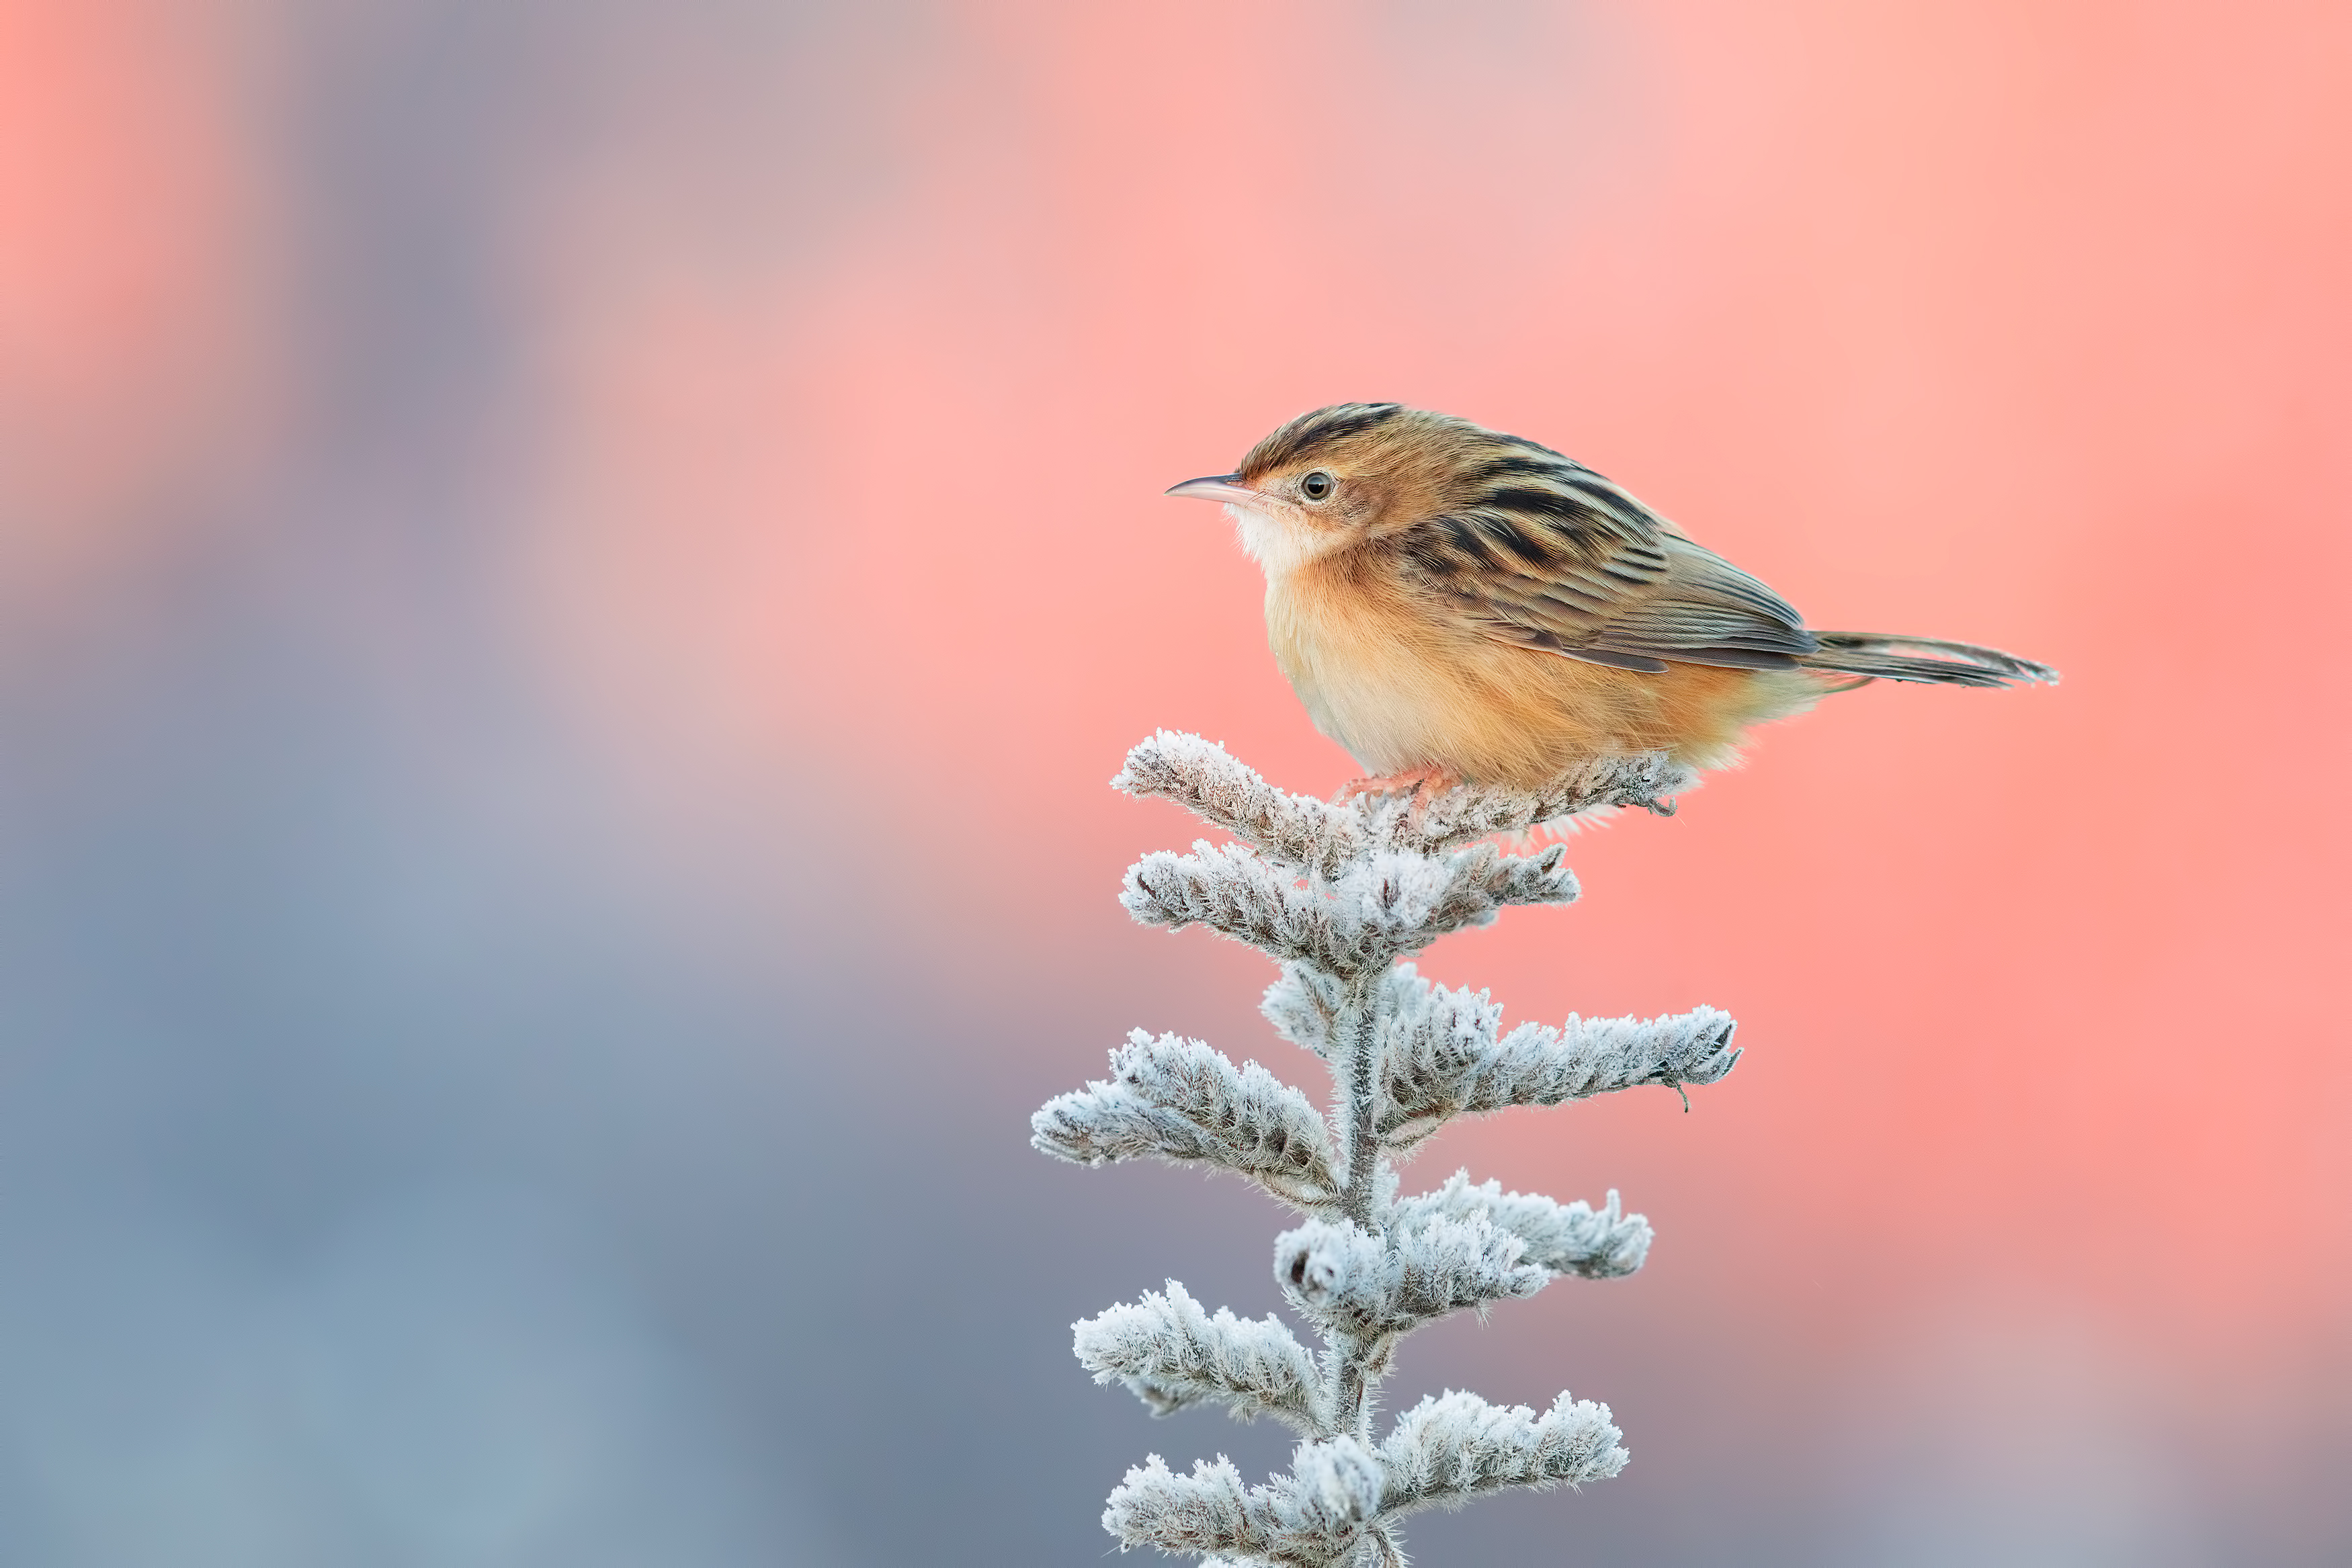 Cute Little Bird, HD Birds, 4k Wallpapers, Images ...